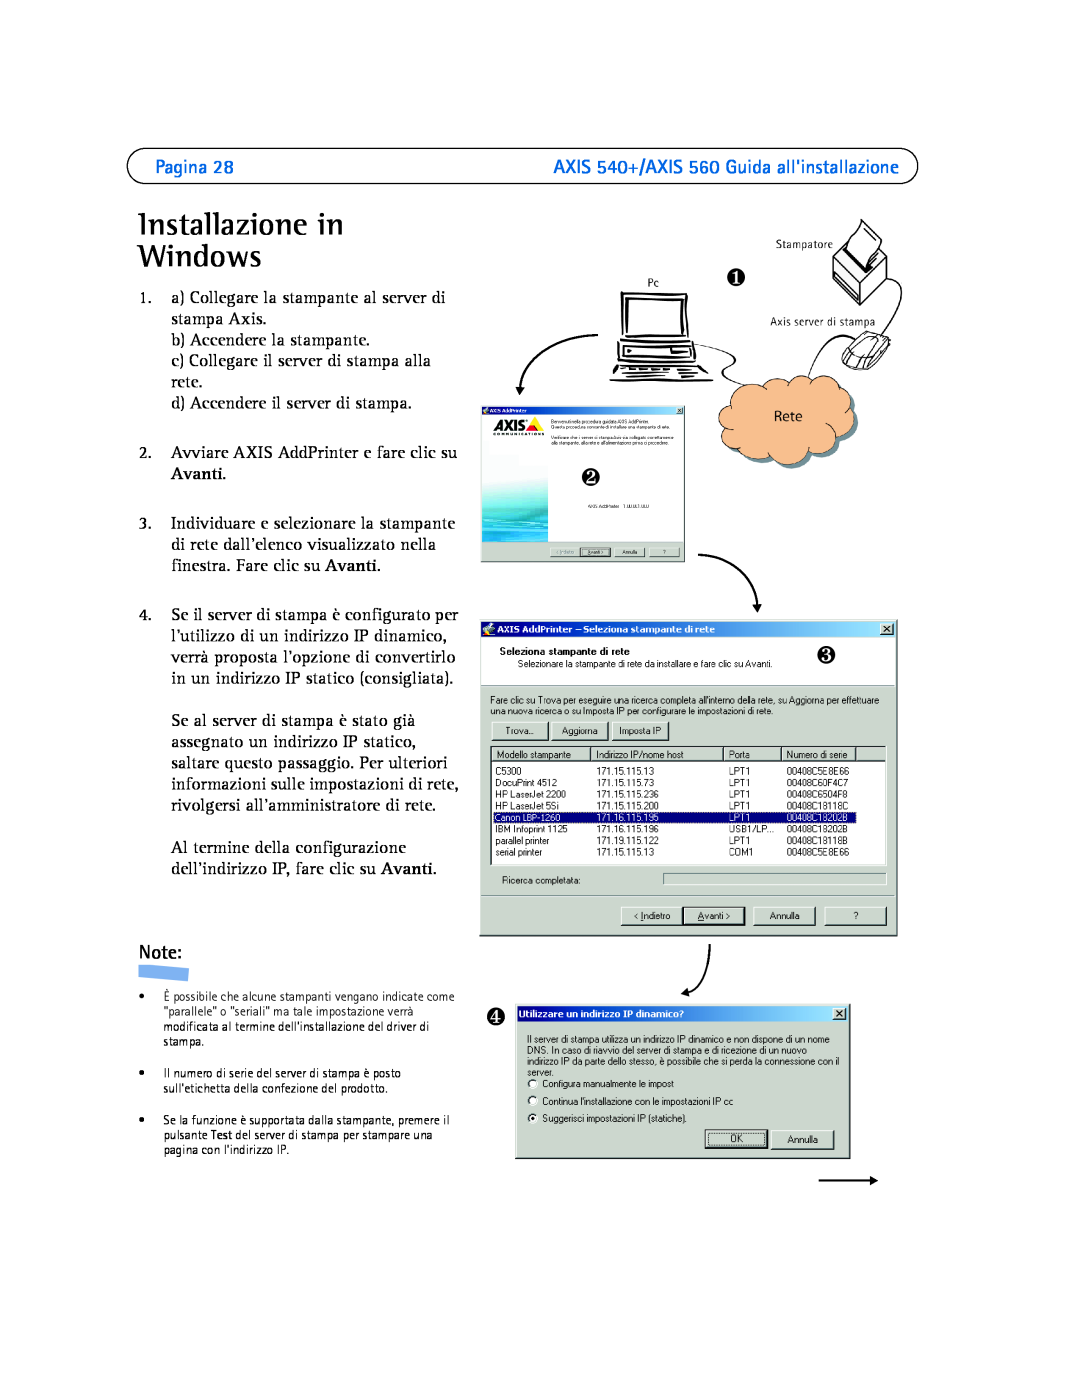 Axis Communications manual Installazione in Windows, Pagina, ❶ ❷ ❸, AXIS 540+/AXIS 560 Guida allinstallazione 